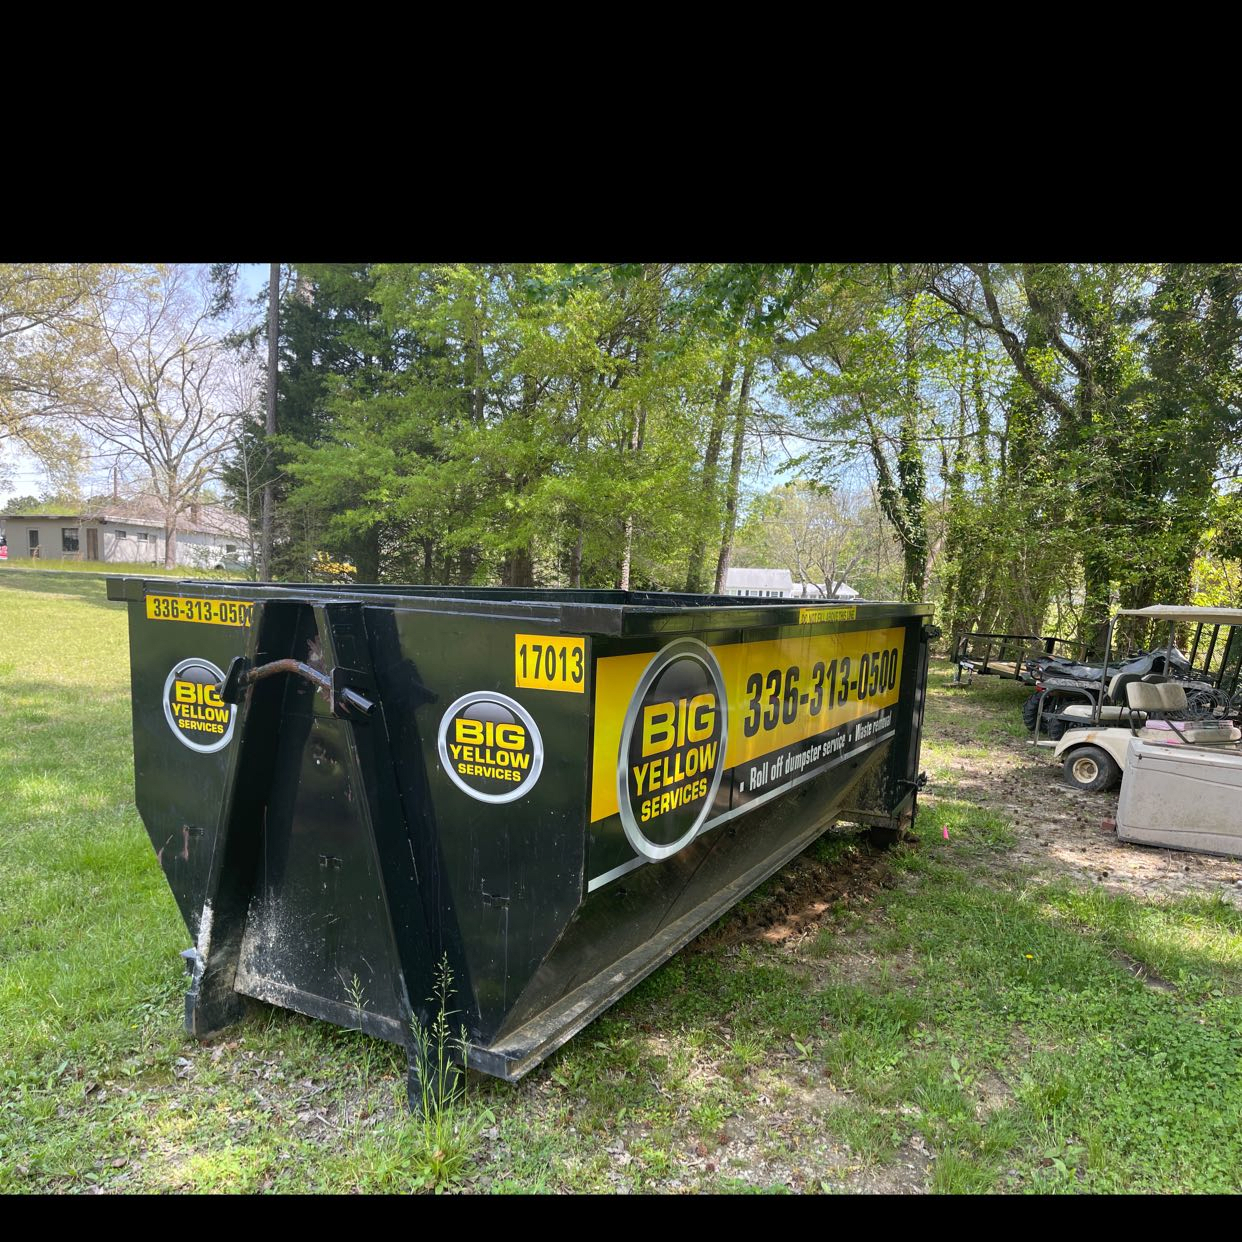 1820 Gerringer Road Elon, NC 27244 Dumpster Rental Dumpster Rentals in Elon, NC | Roll-Off Dumpster and Portable Toilet Rentals | Big Yellow Services, LLC